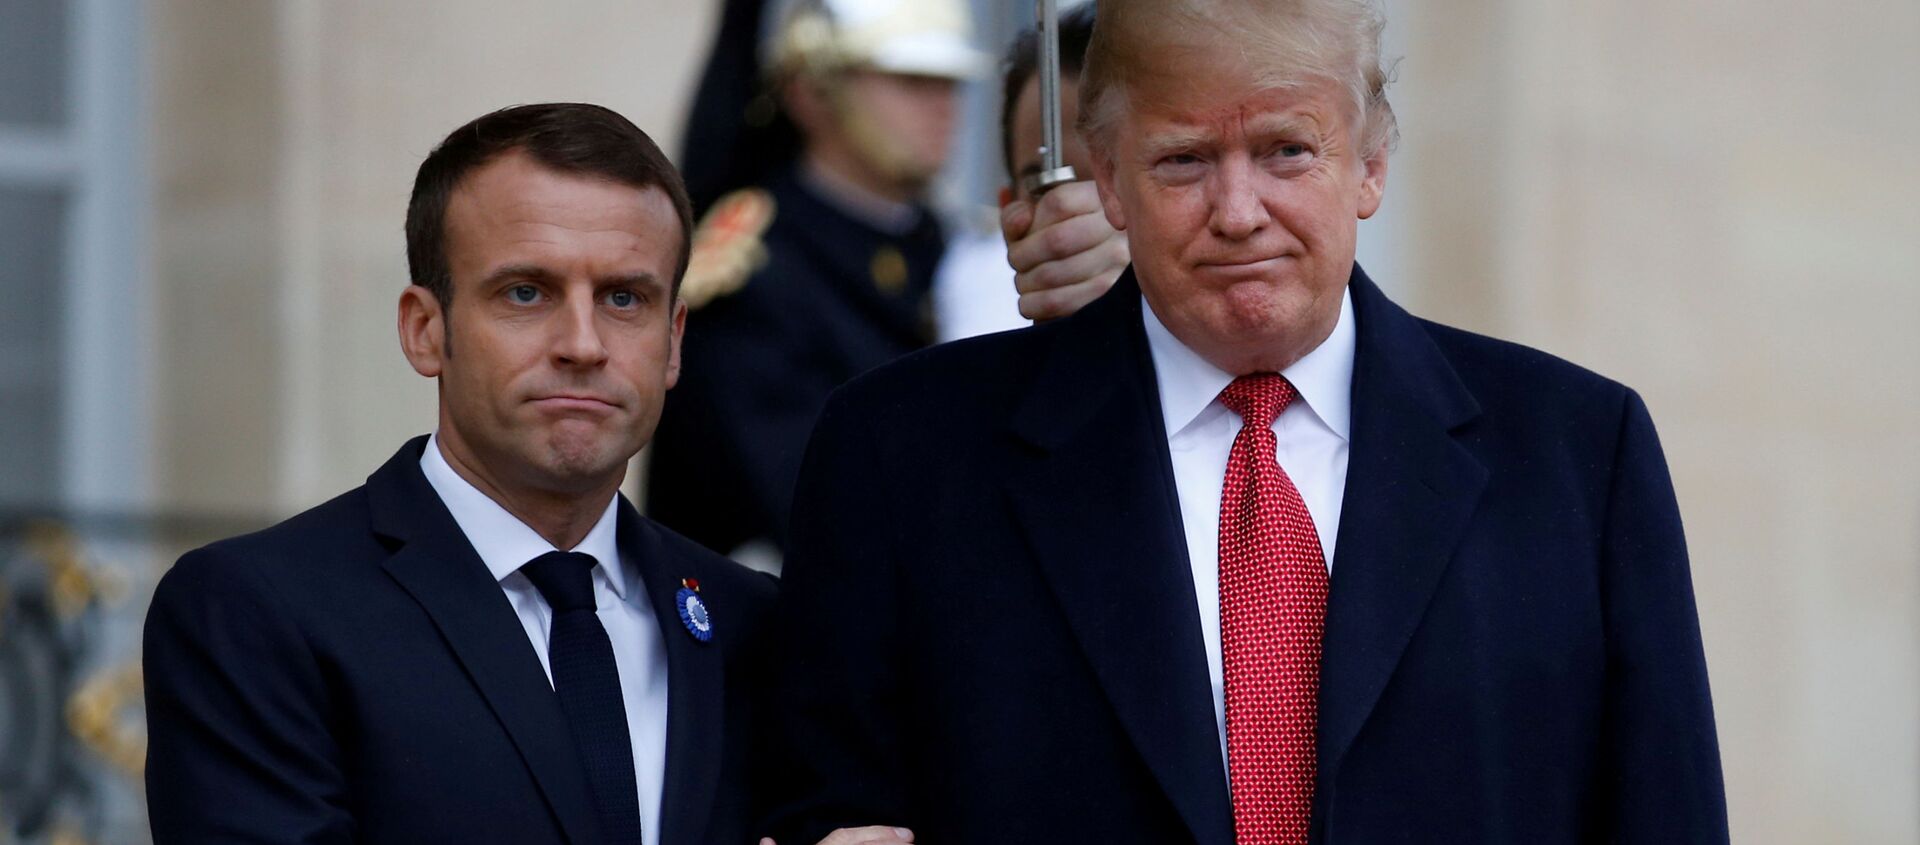 Президенты Франции и США Эммануэль Макрон и Дональд Трамп Трамп в Париже, Франция - Sputnik Ўзбекистон, 1920, 03.12.2019